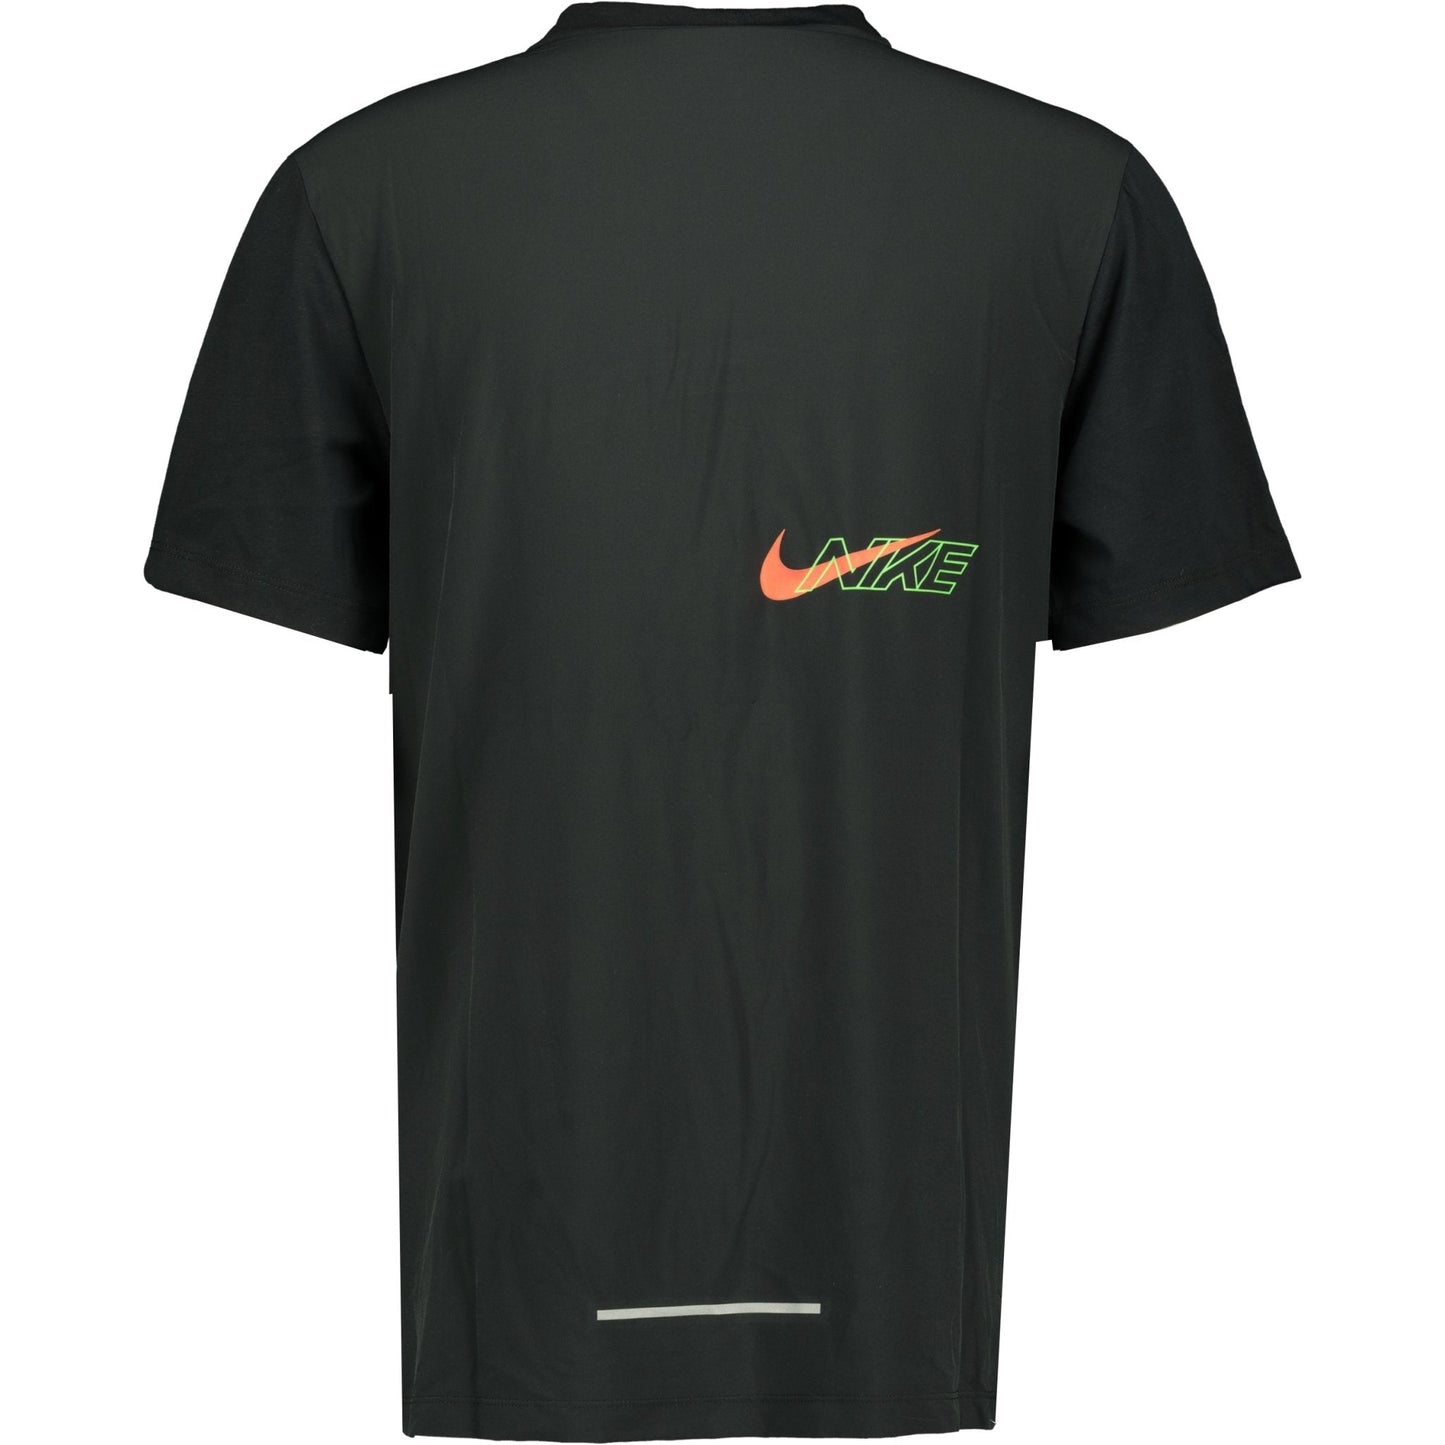 Nike Dri-Fit T-Shirt Black & Green - LinkFashionco